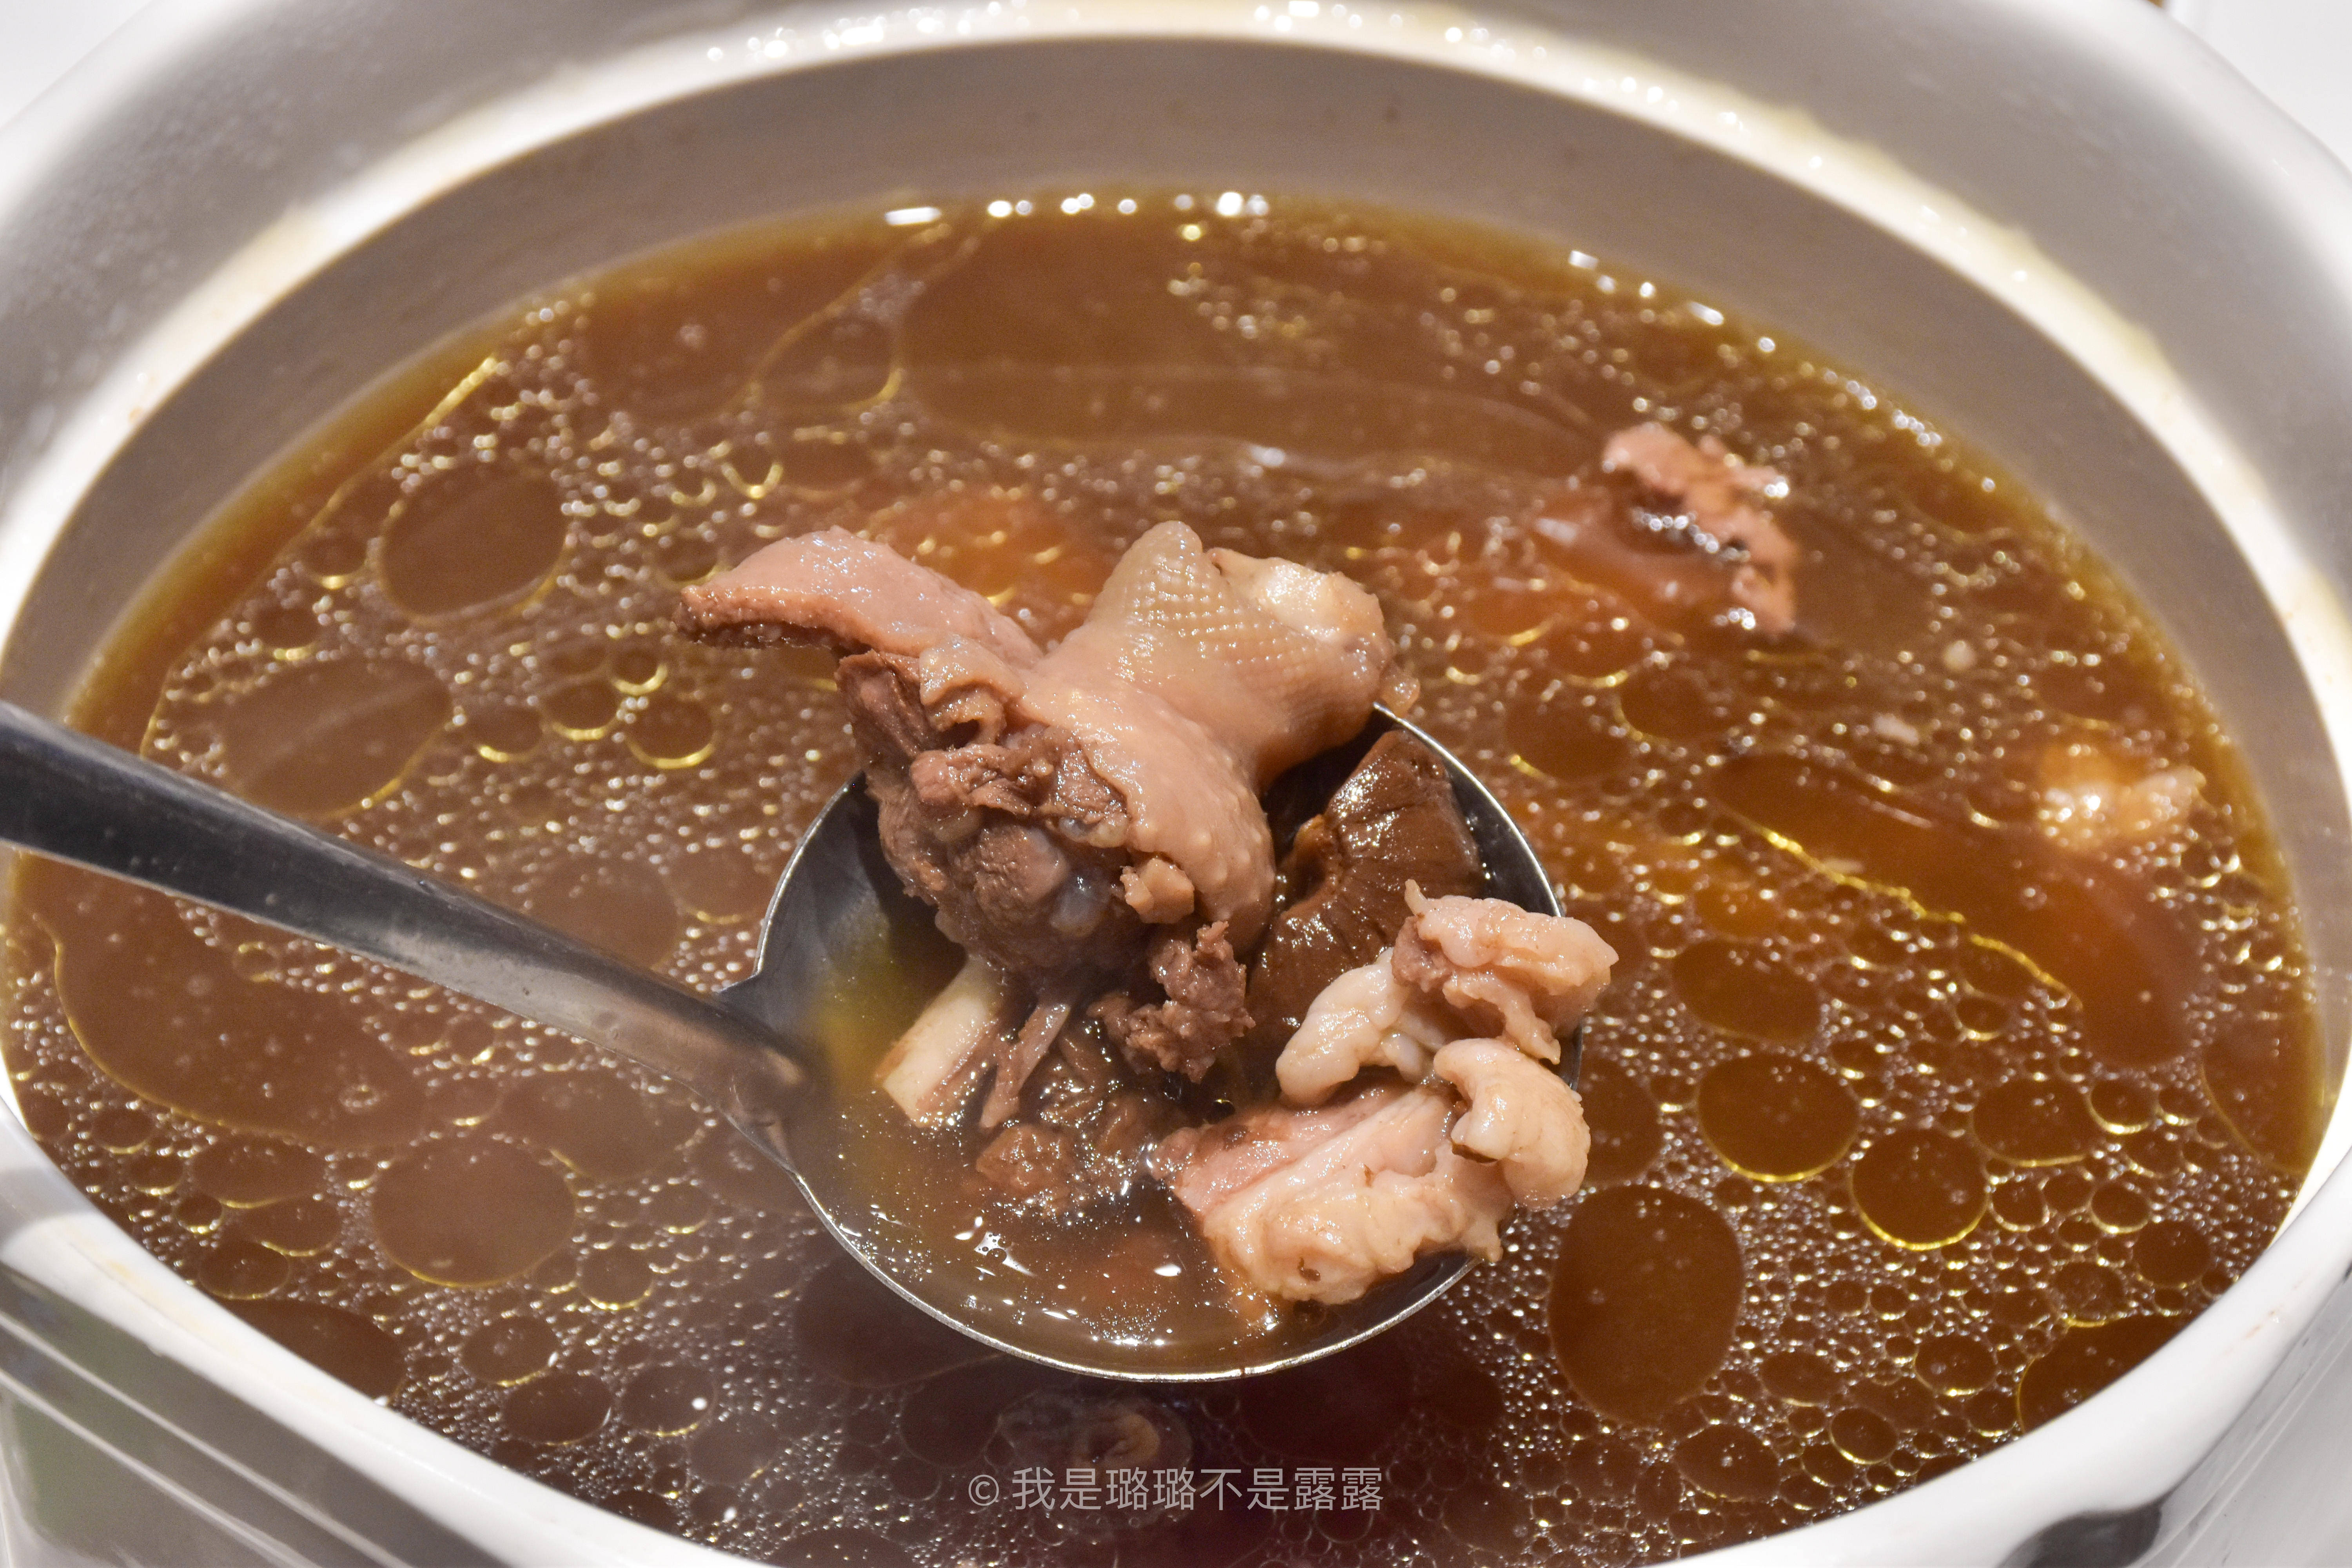 文蛤黑蒜老鸭汤,闽南人喜欢的汤羹之一,黑蒜浓郁,文蛤提鲜,黄金搭配